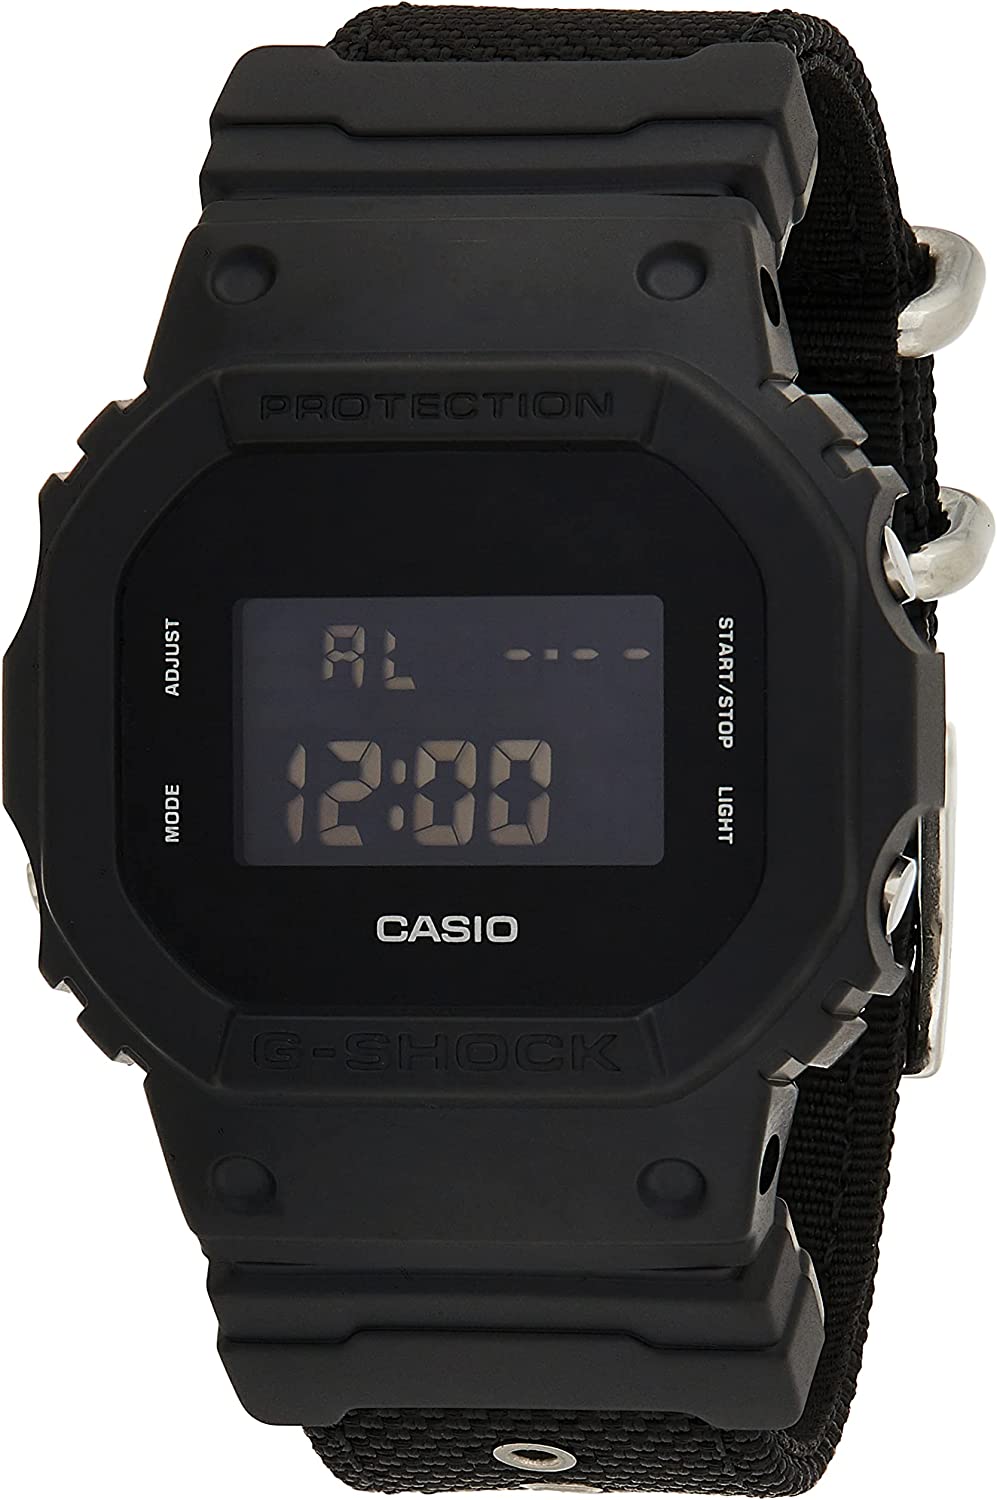 Khám phá đồng hồ Casio DW-5600BBN-1DR